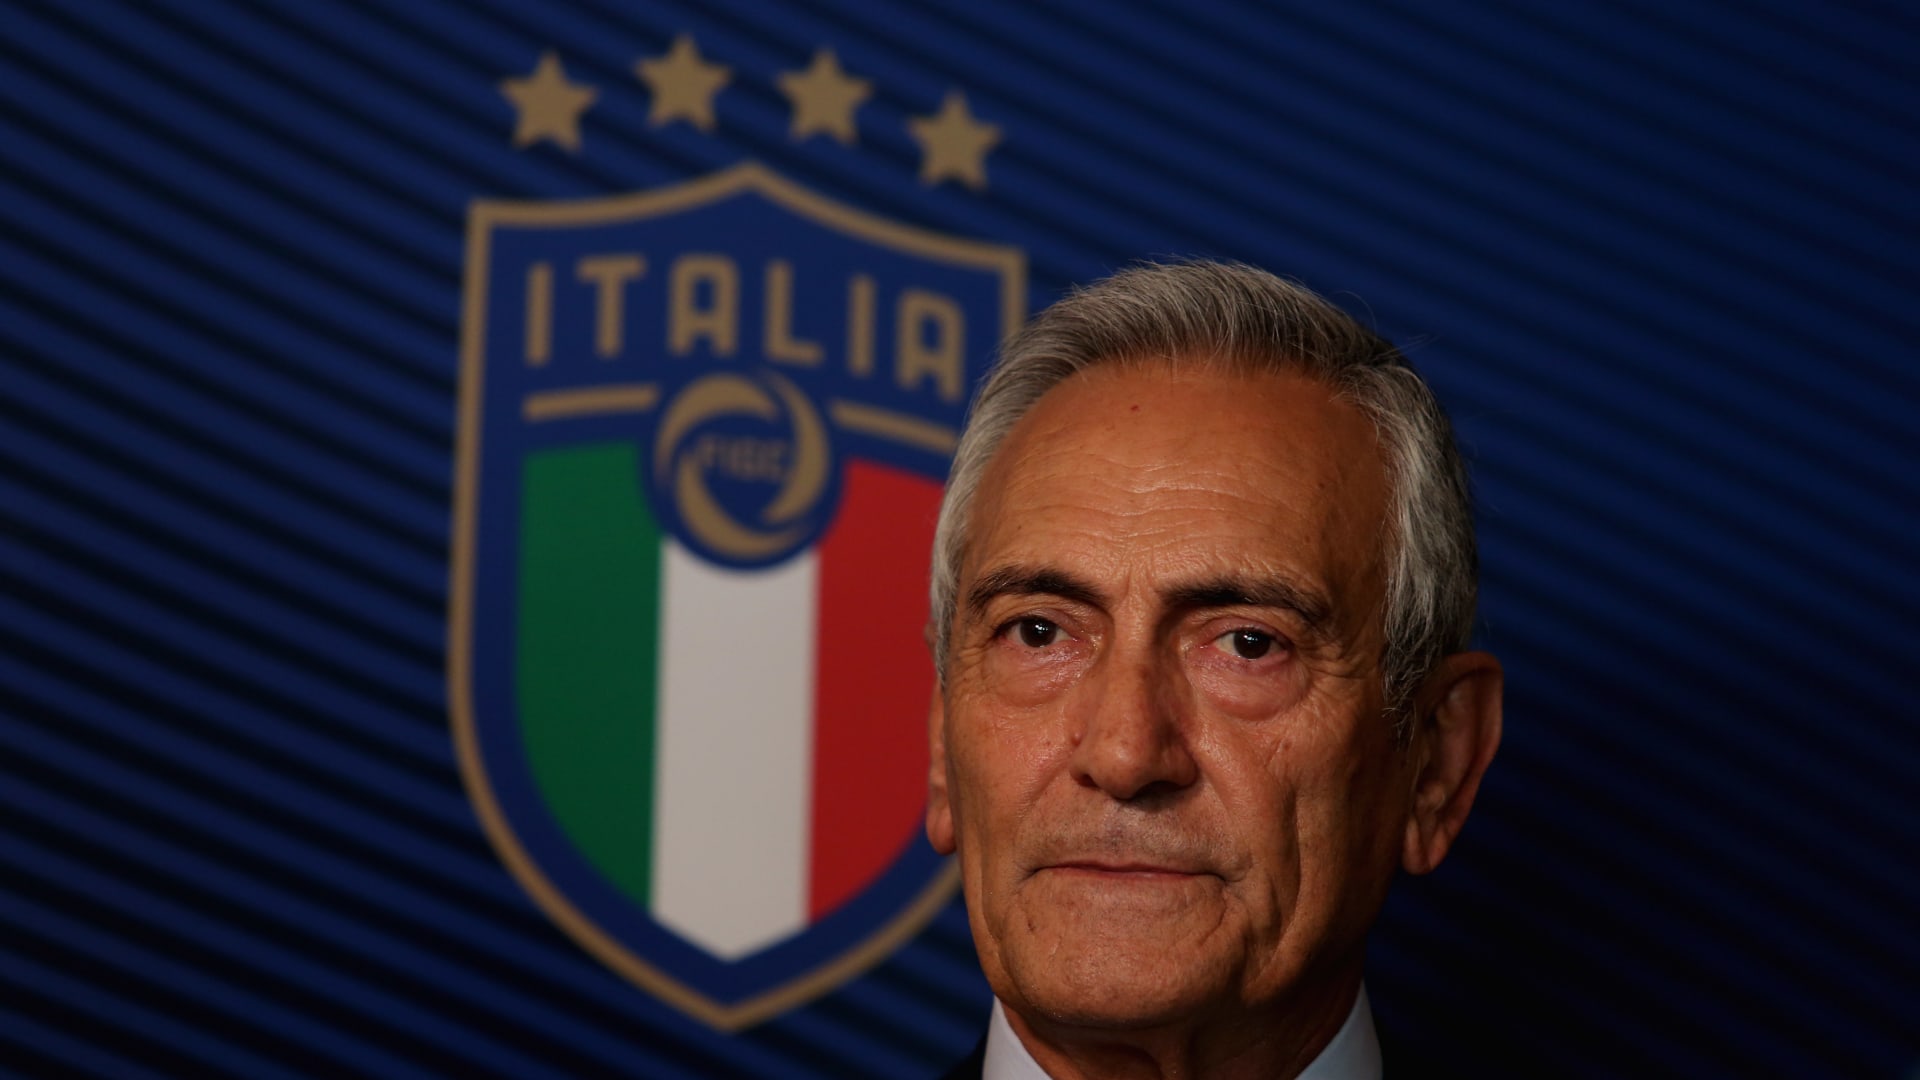 اتحاد كرة القدم الإيطالي: سنطلب تأجيل بطولة كأس الأمم الأوروبية المقررة هذا الصيف